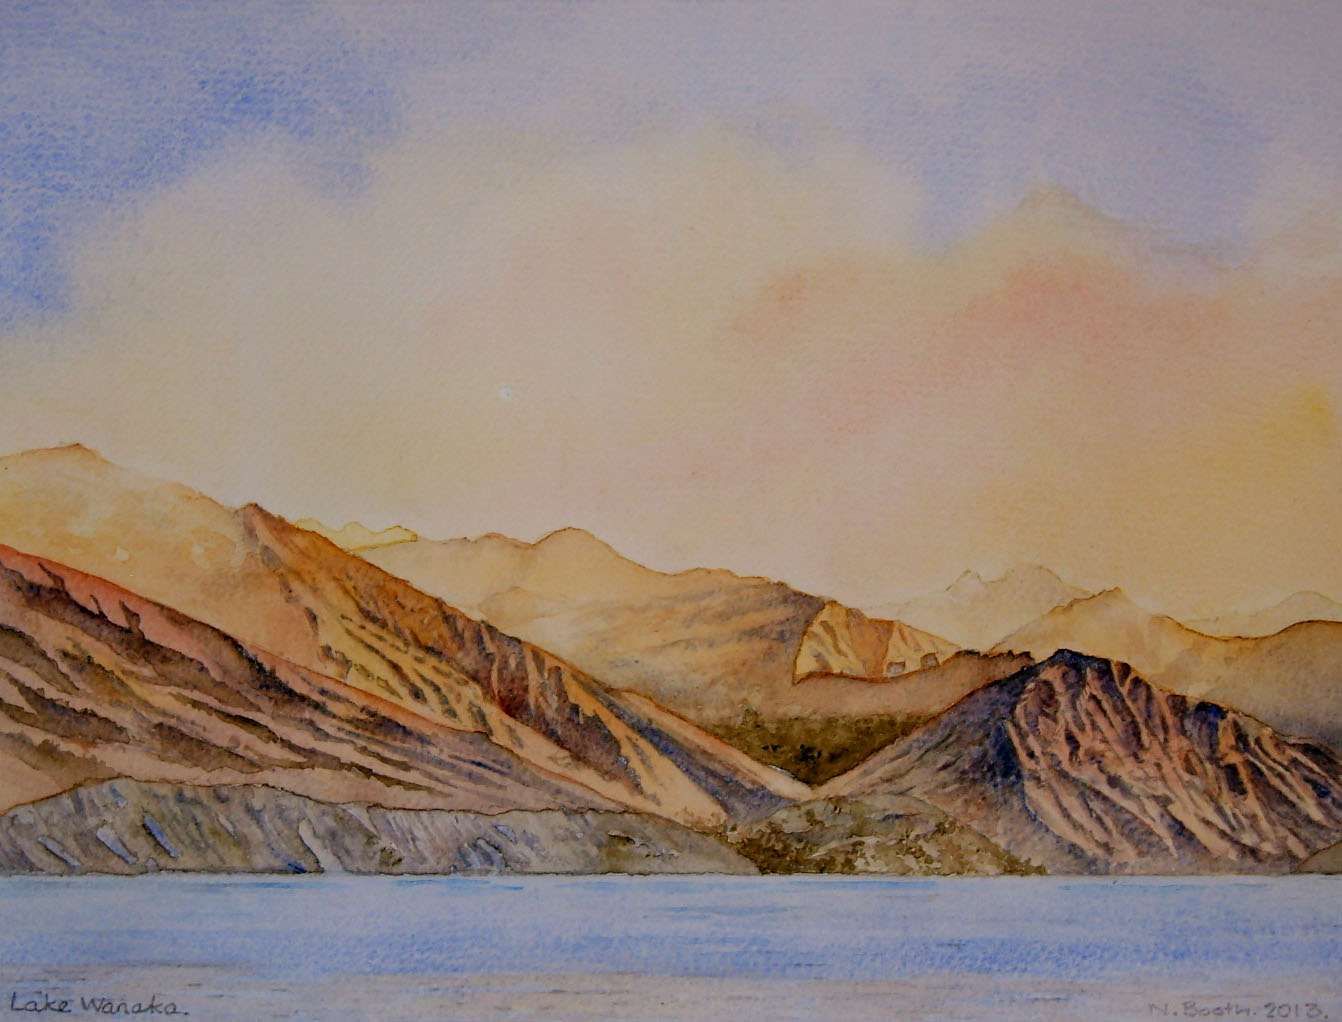 Lake Wanaka, painted 2013